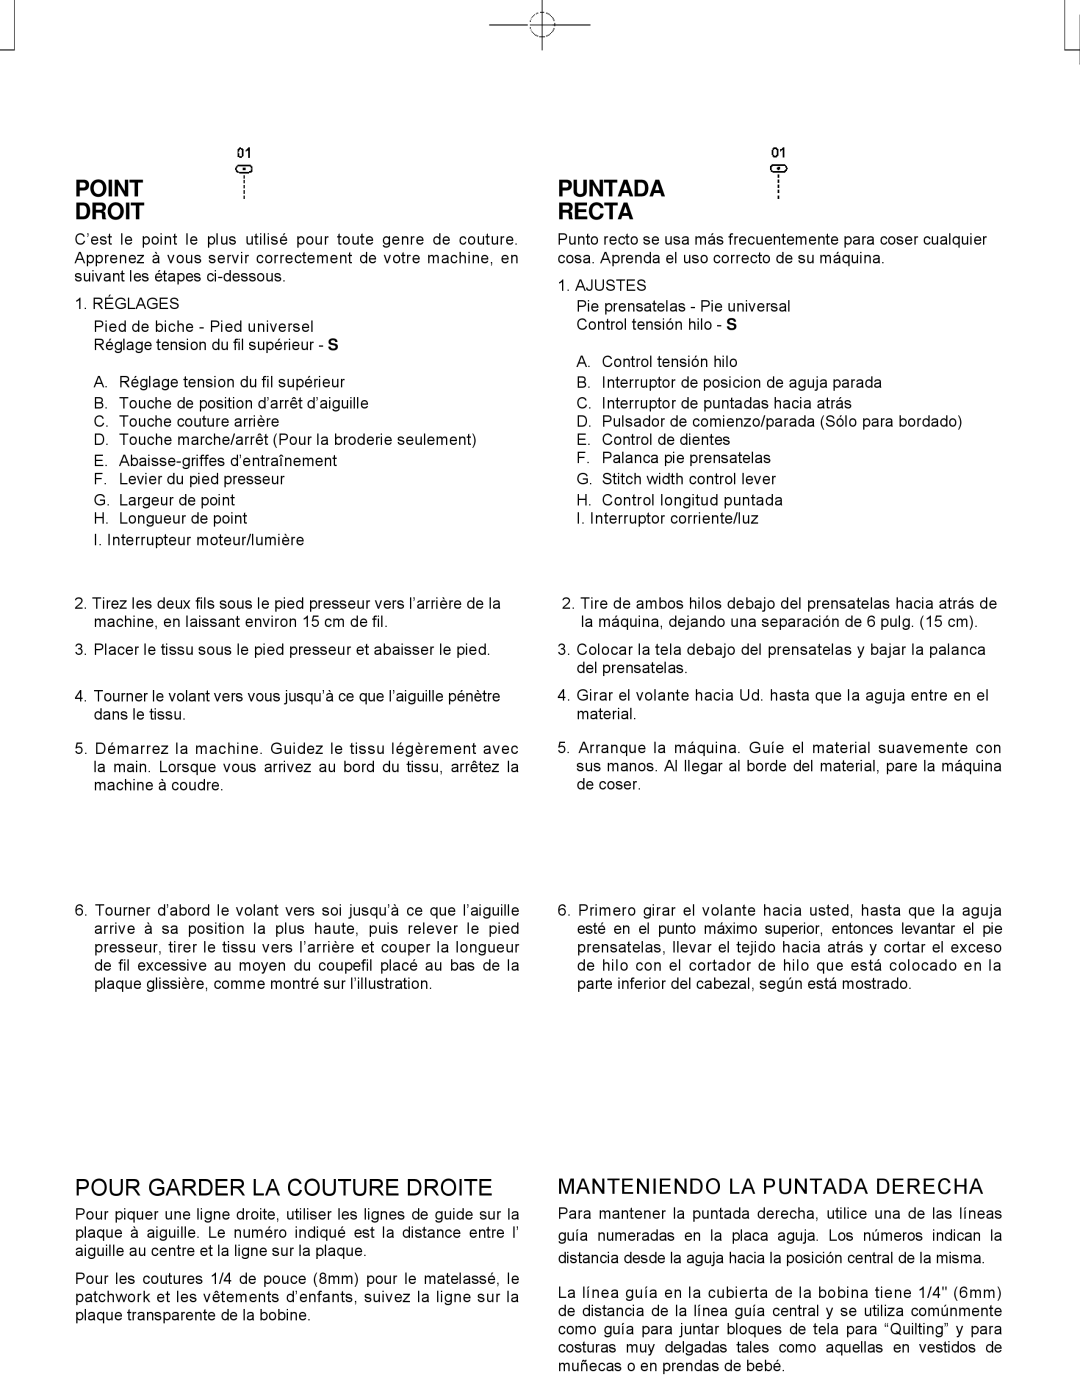 Singer CE-150 instruction manual Point Droit, Puntada Recta, Pour Garder LA Couture Droite 